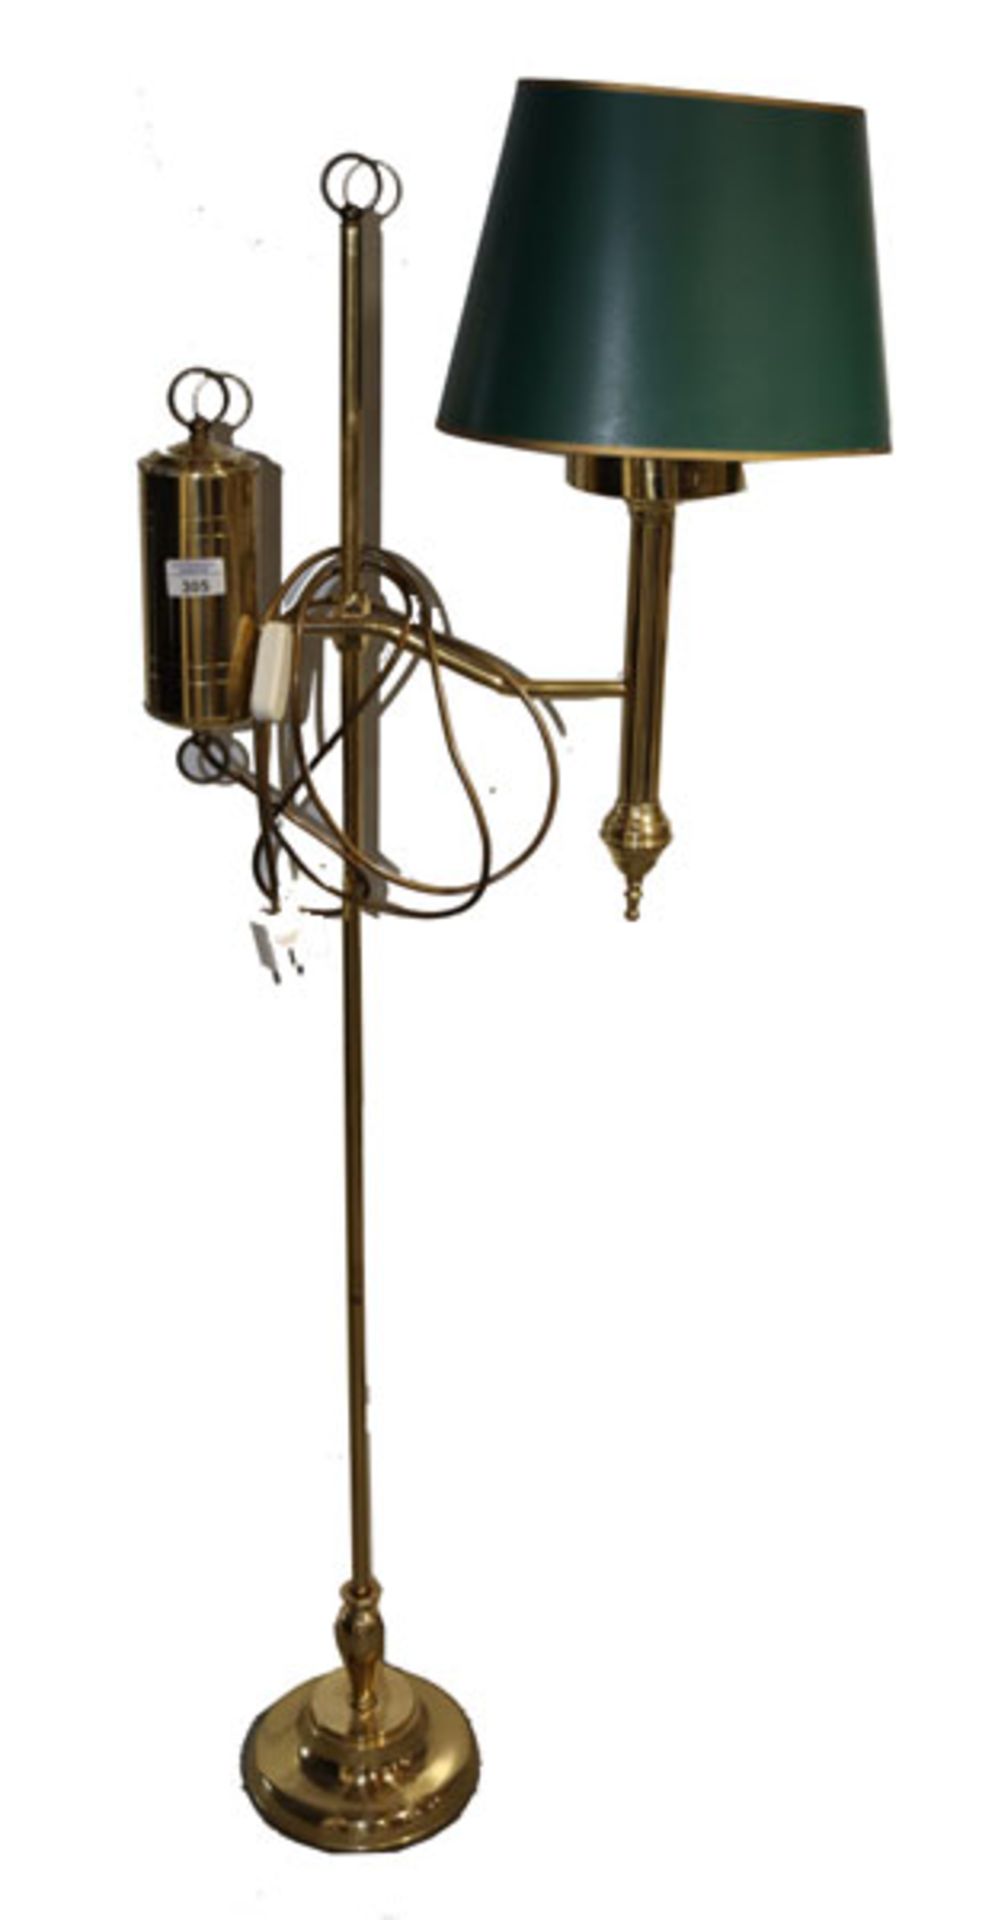 Messing Stehlampe, höhenverstellbar mit grünem Schirm, Gebrauchsspuren, H 143 cm, B 53 cm, T 24 cm